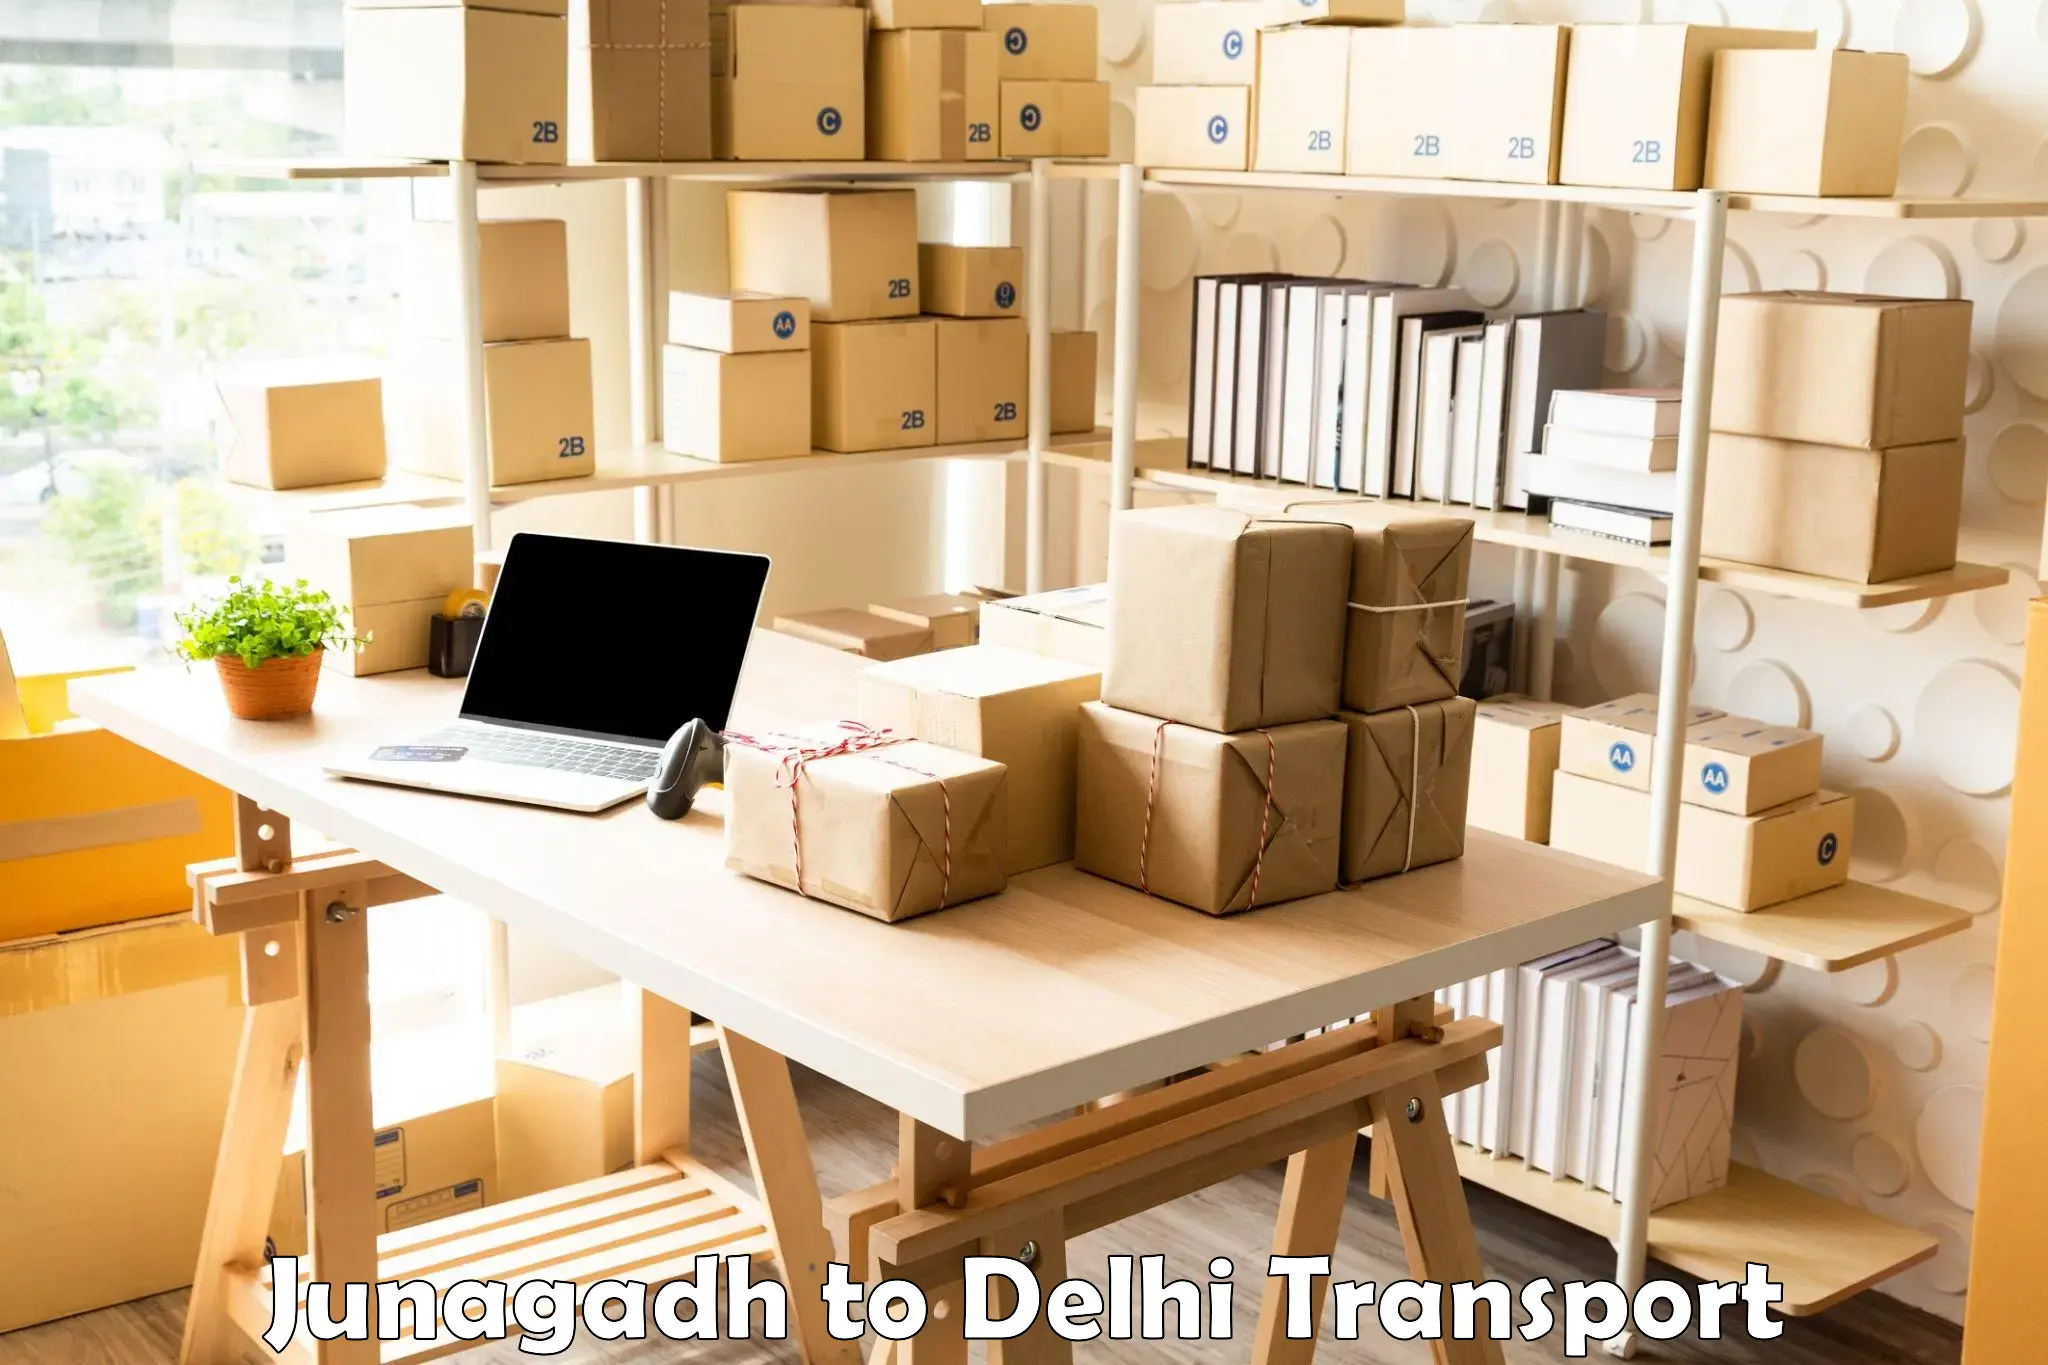 Intercity goods transport in Junagadh to Delhi